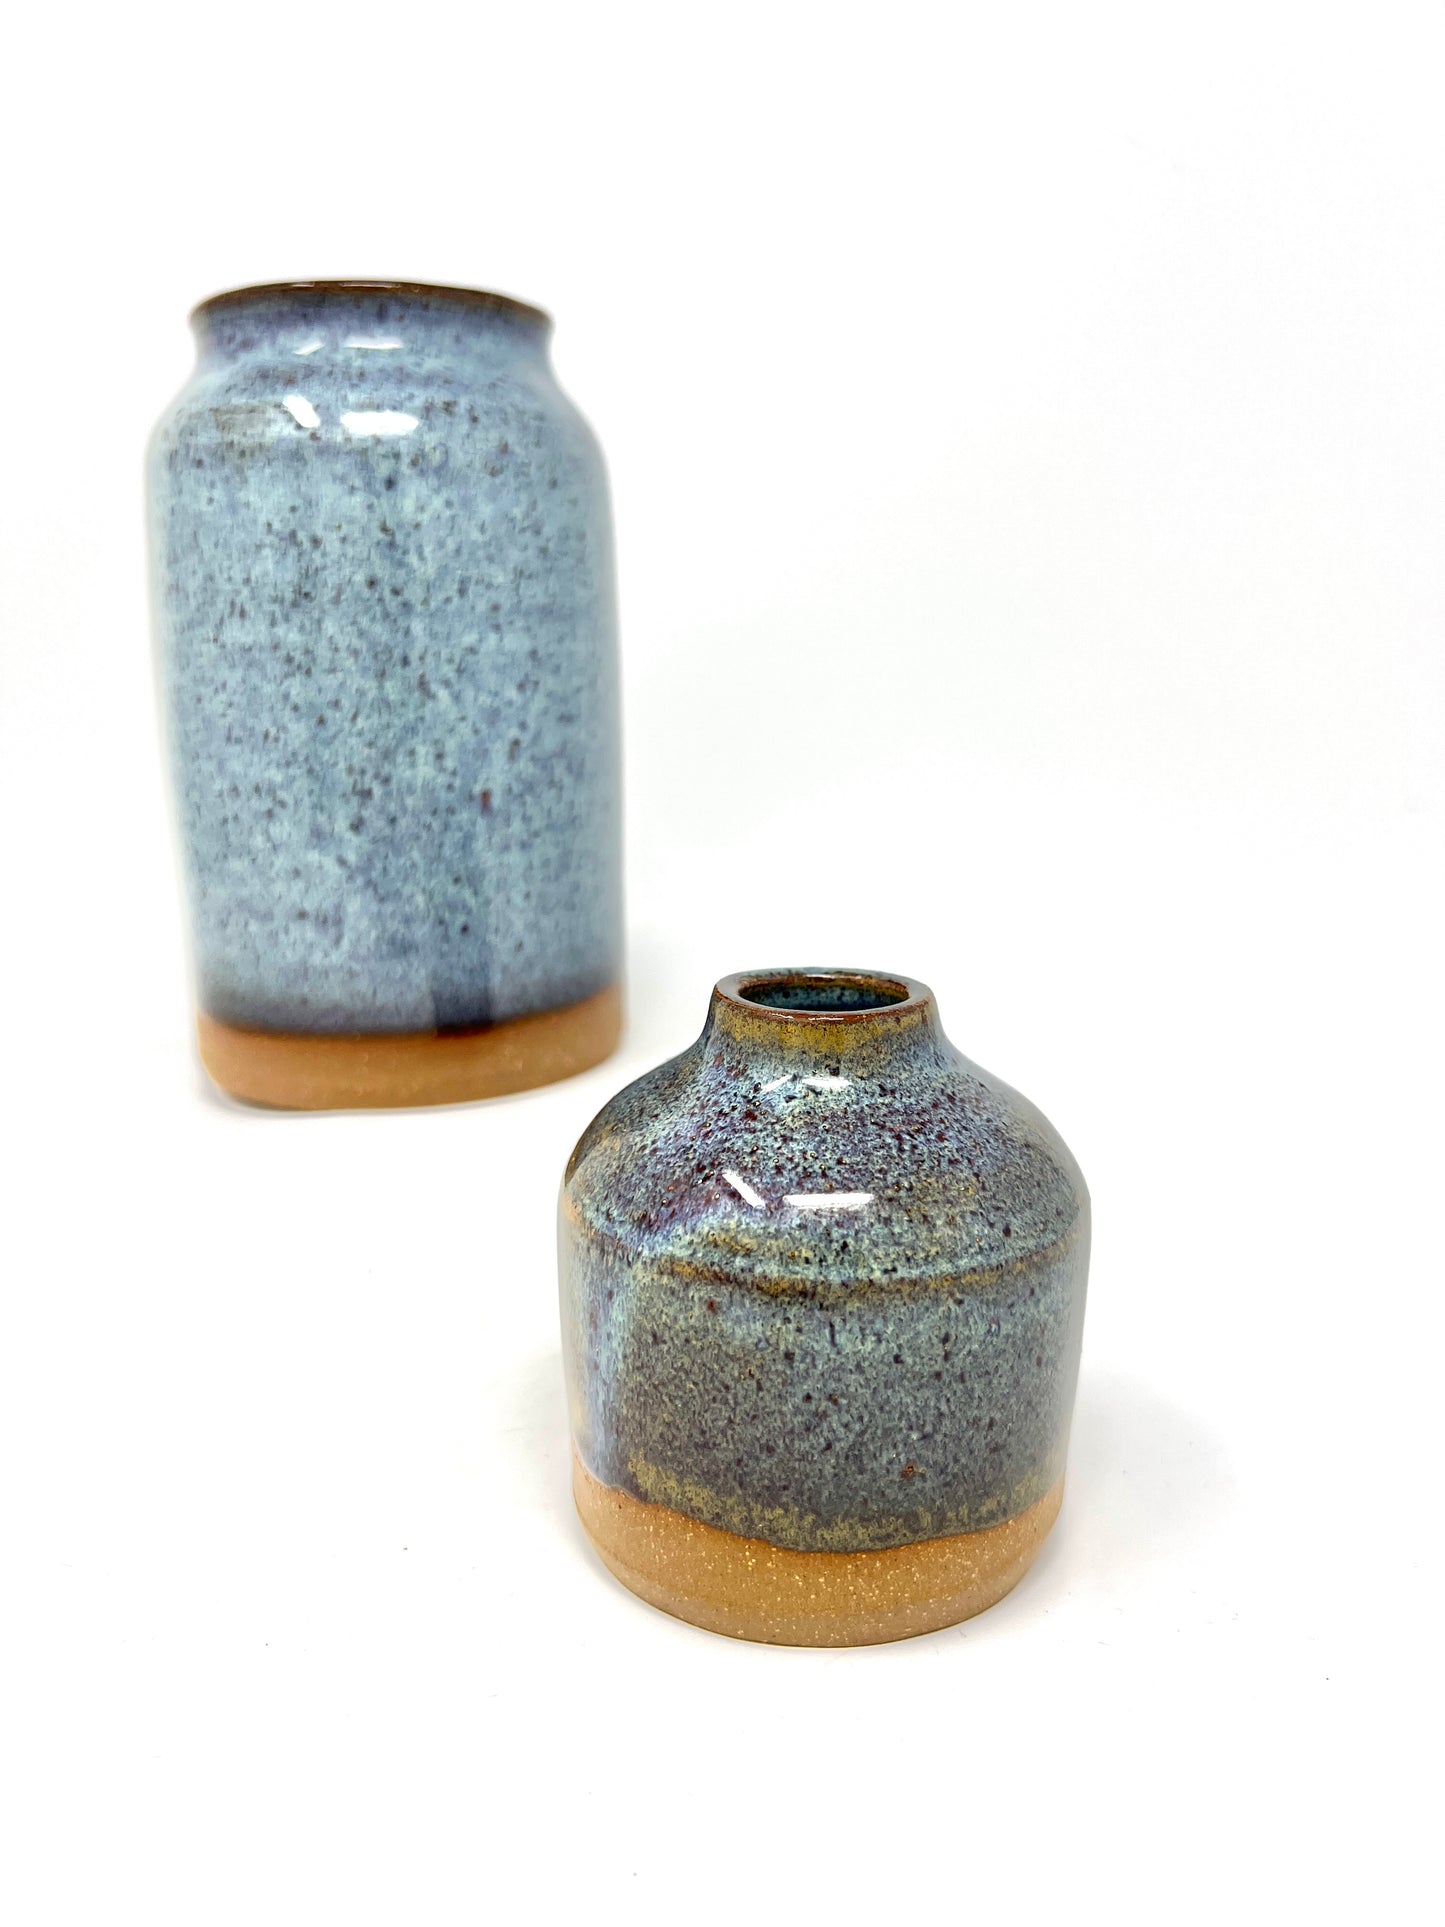 Blue Vase Pair